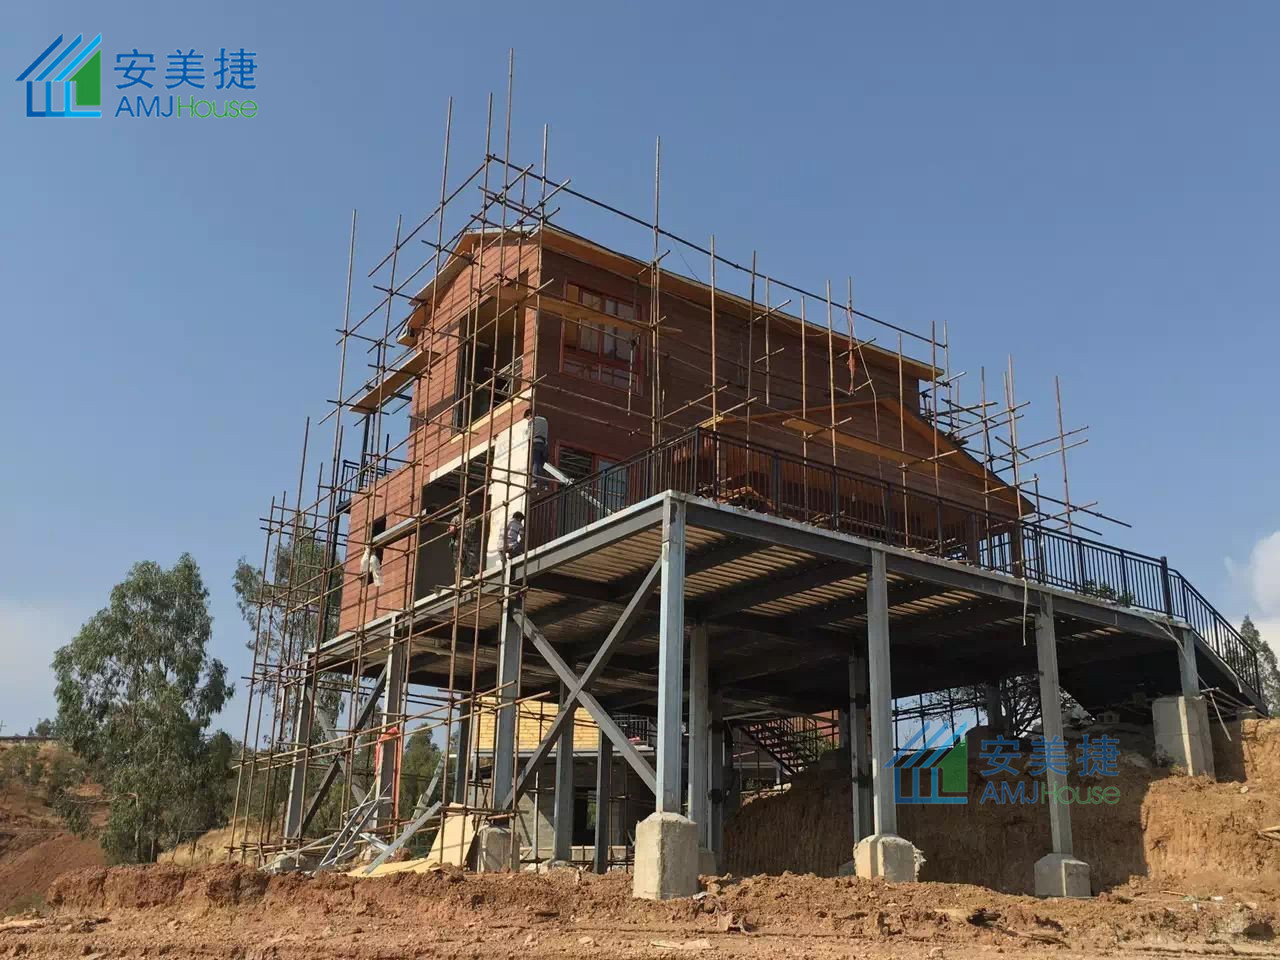 Yunnan Baituomu Homestay Project